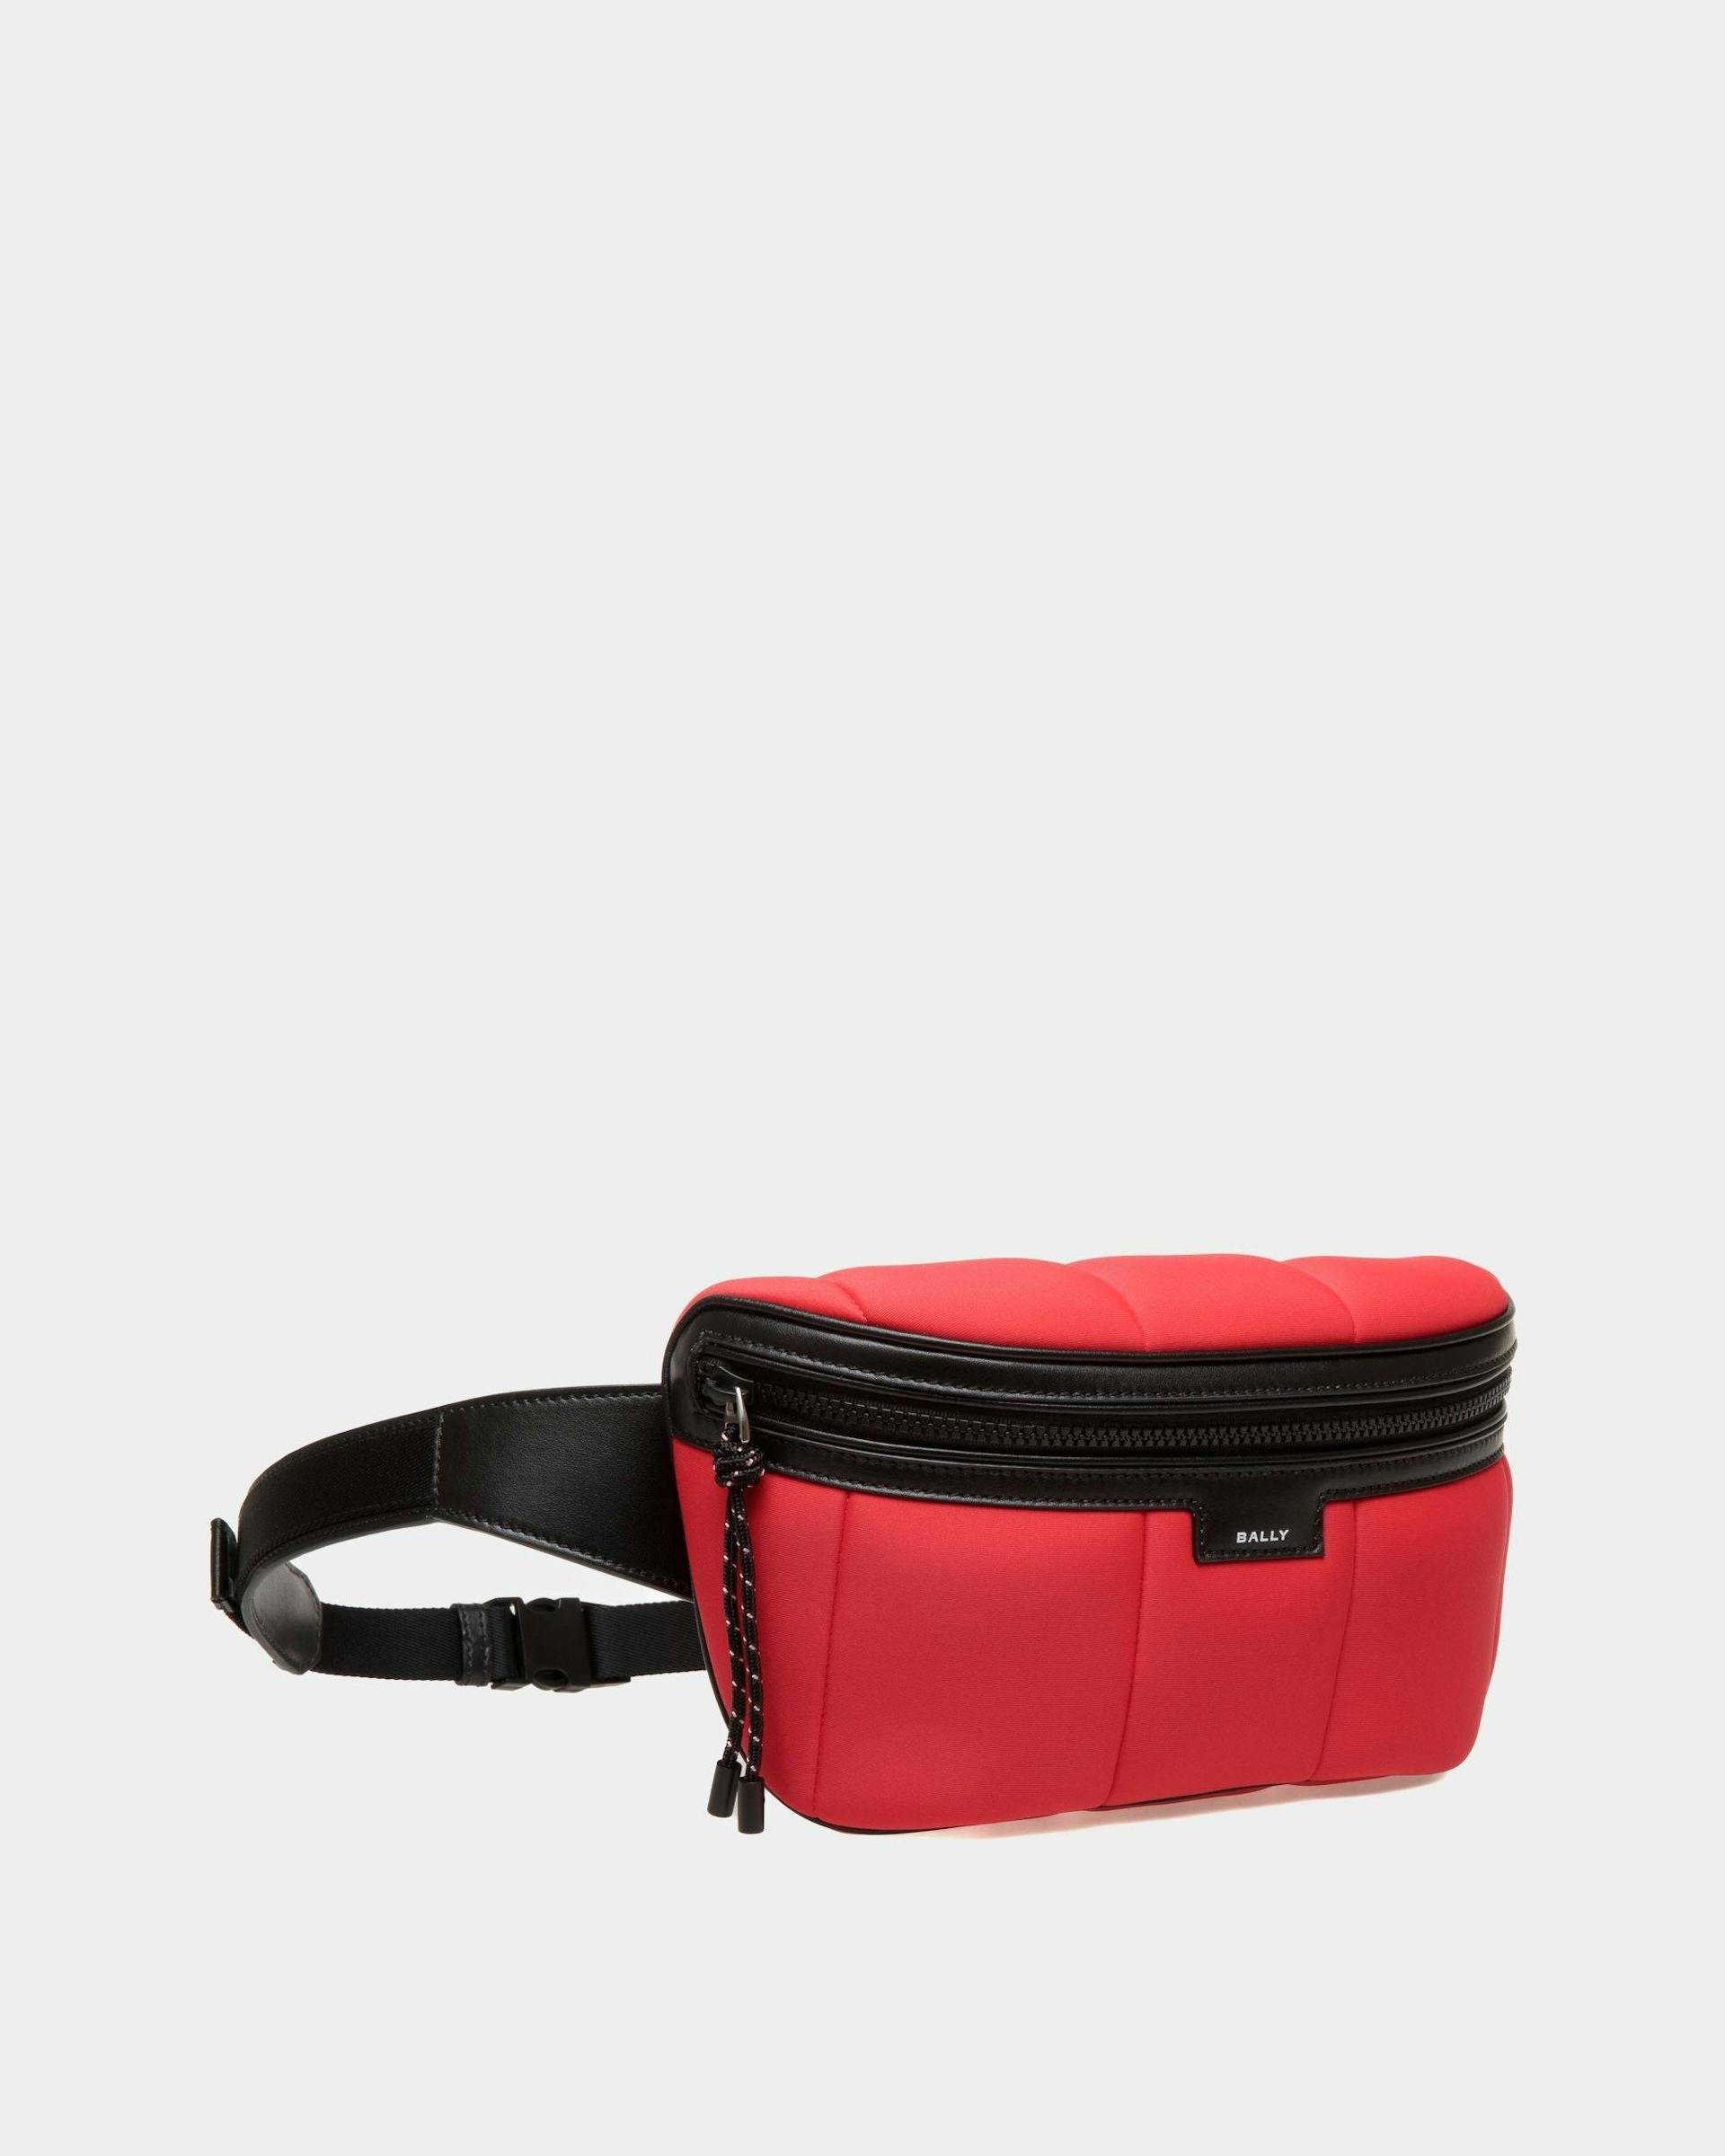 Men's Mountain Belt Bag In Red Neoprene | Bally | Still Life 3/4 Front